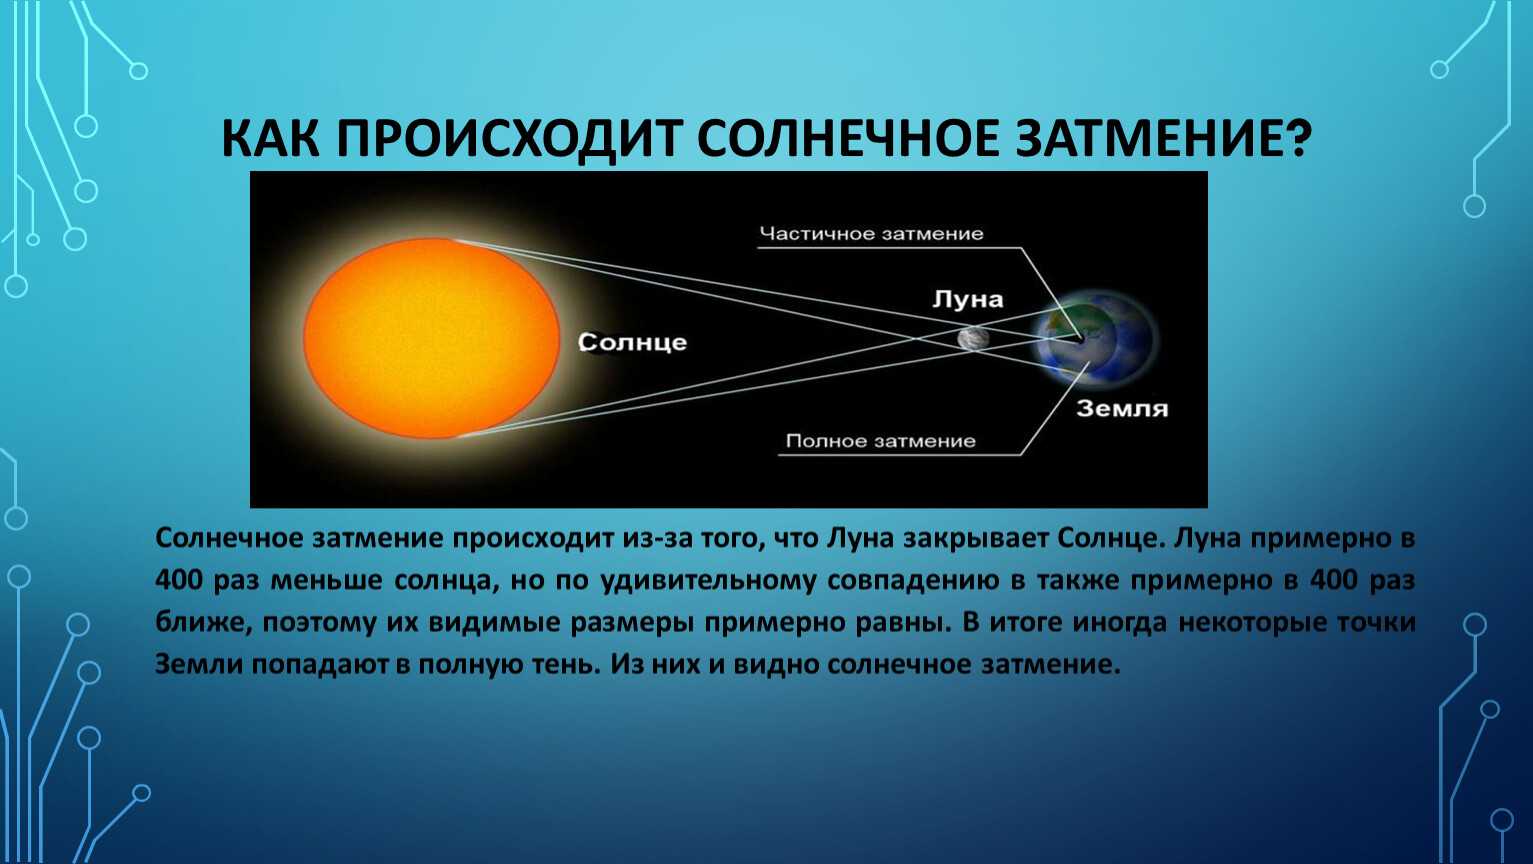 Во сколько произойдет солнечное затмение 8. Какроисходит солнечное затмение. Как происходит затмение. Частичное солнечное затмение схема.